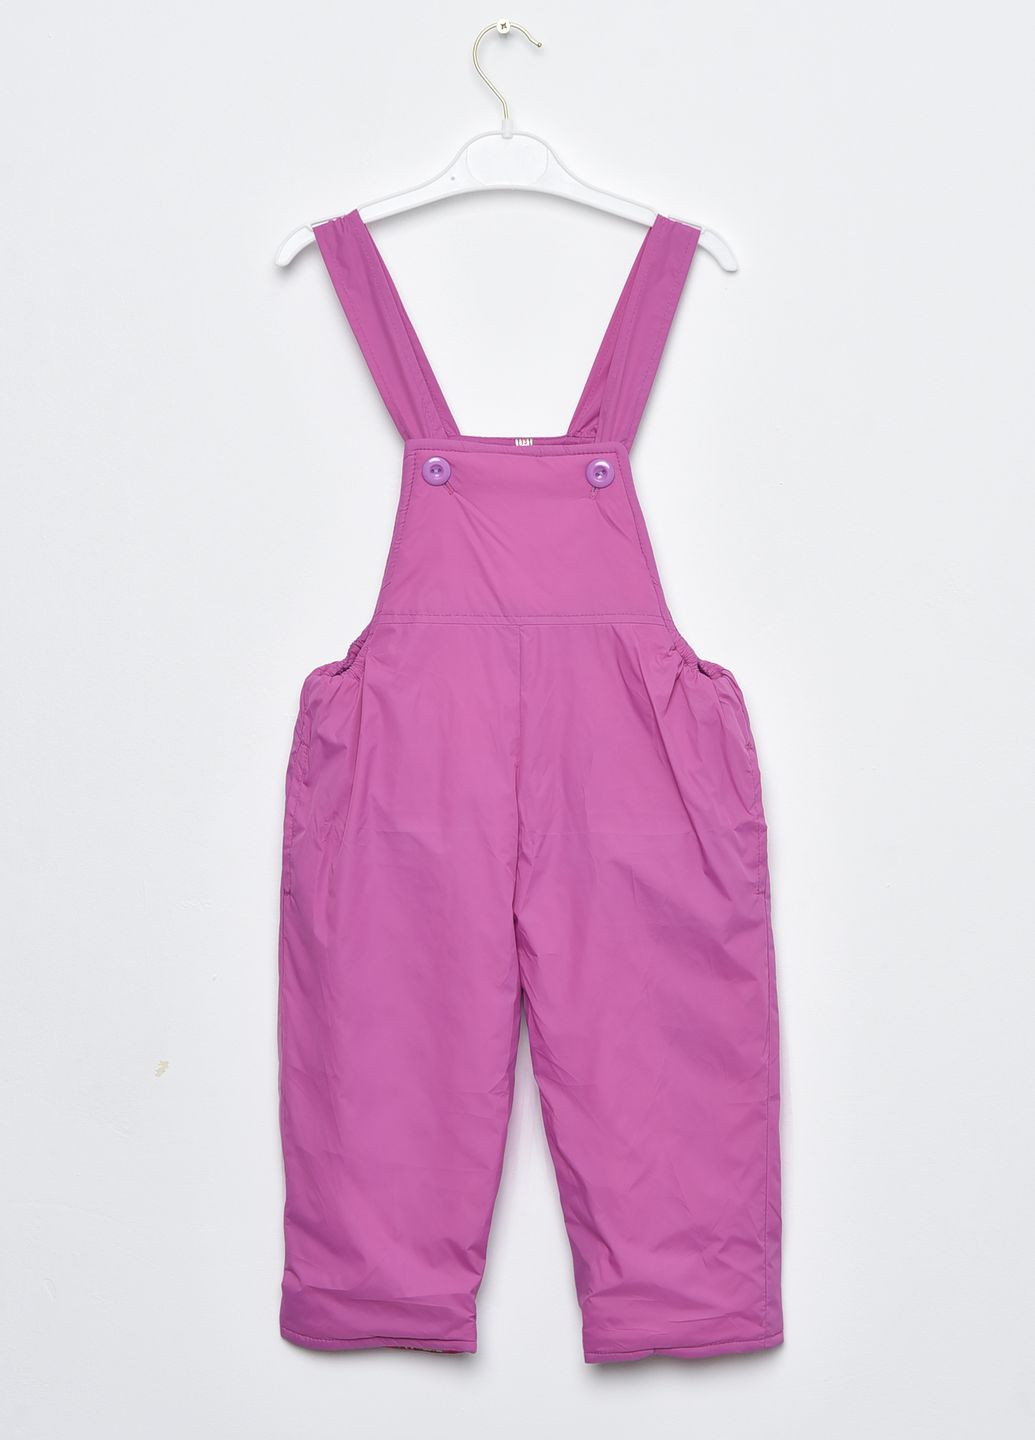 Фіолетова зимня куртка та напівкомбінезон дитячий для дівчинки єврозима фіолетового кольору Let's Shop